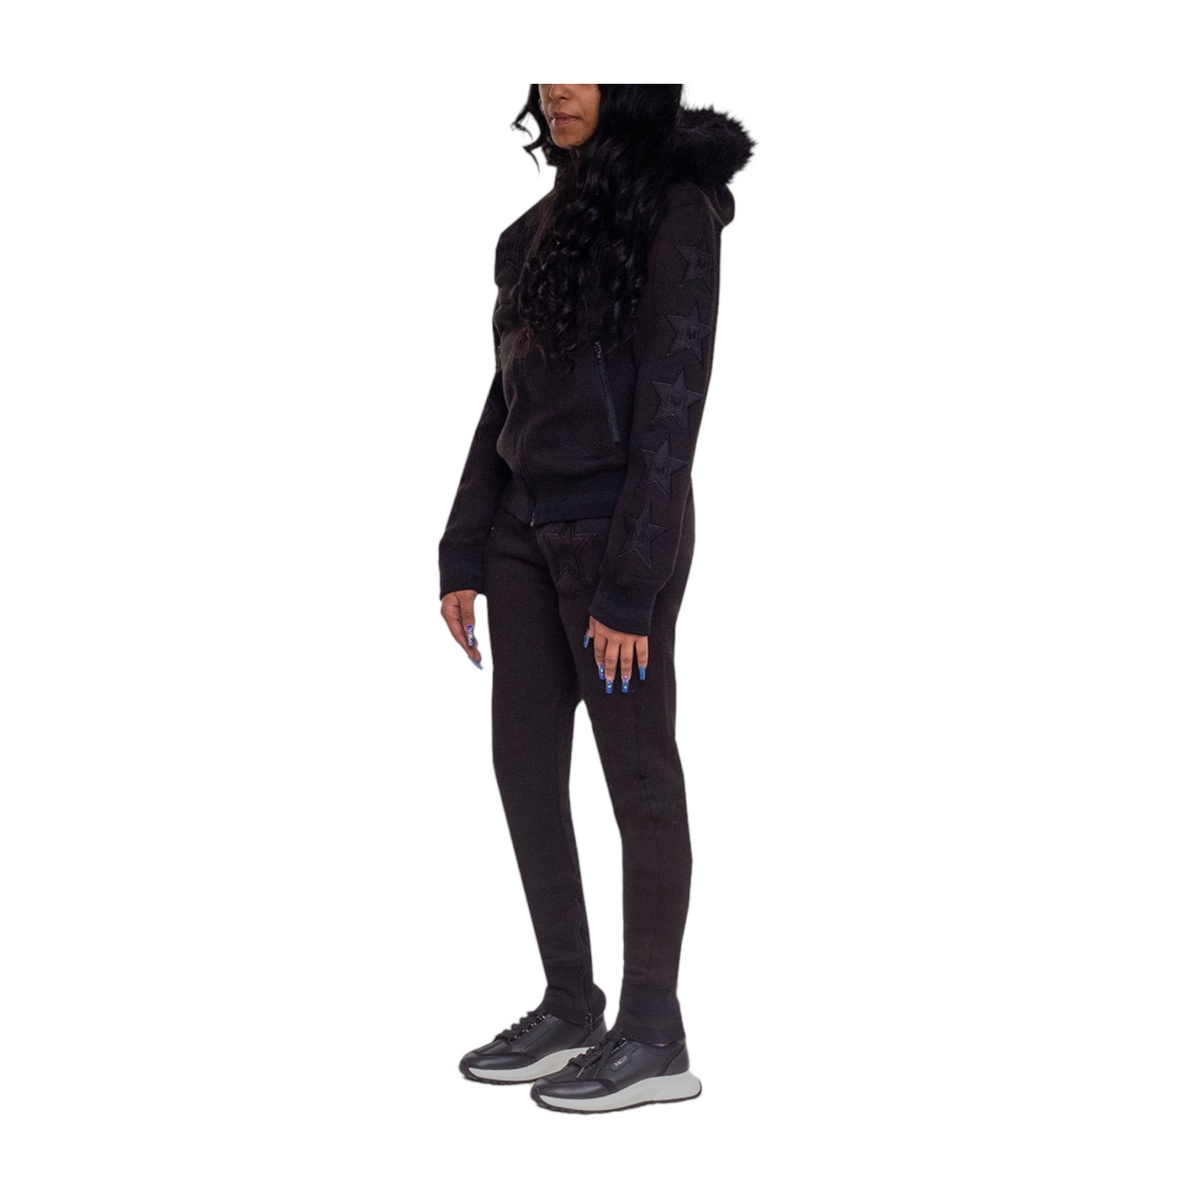 MDB Couture Women's M-Star Fur Hooded Fleece Sweatsuit - Black